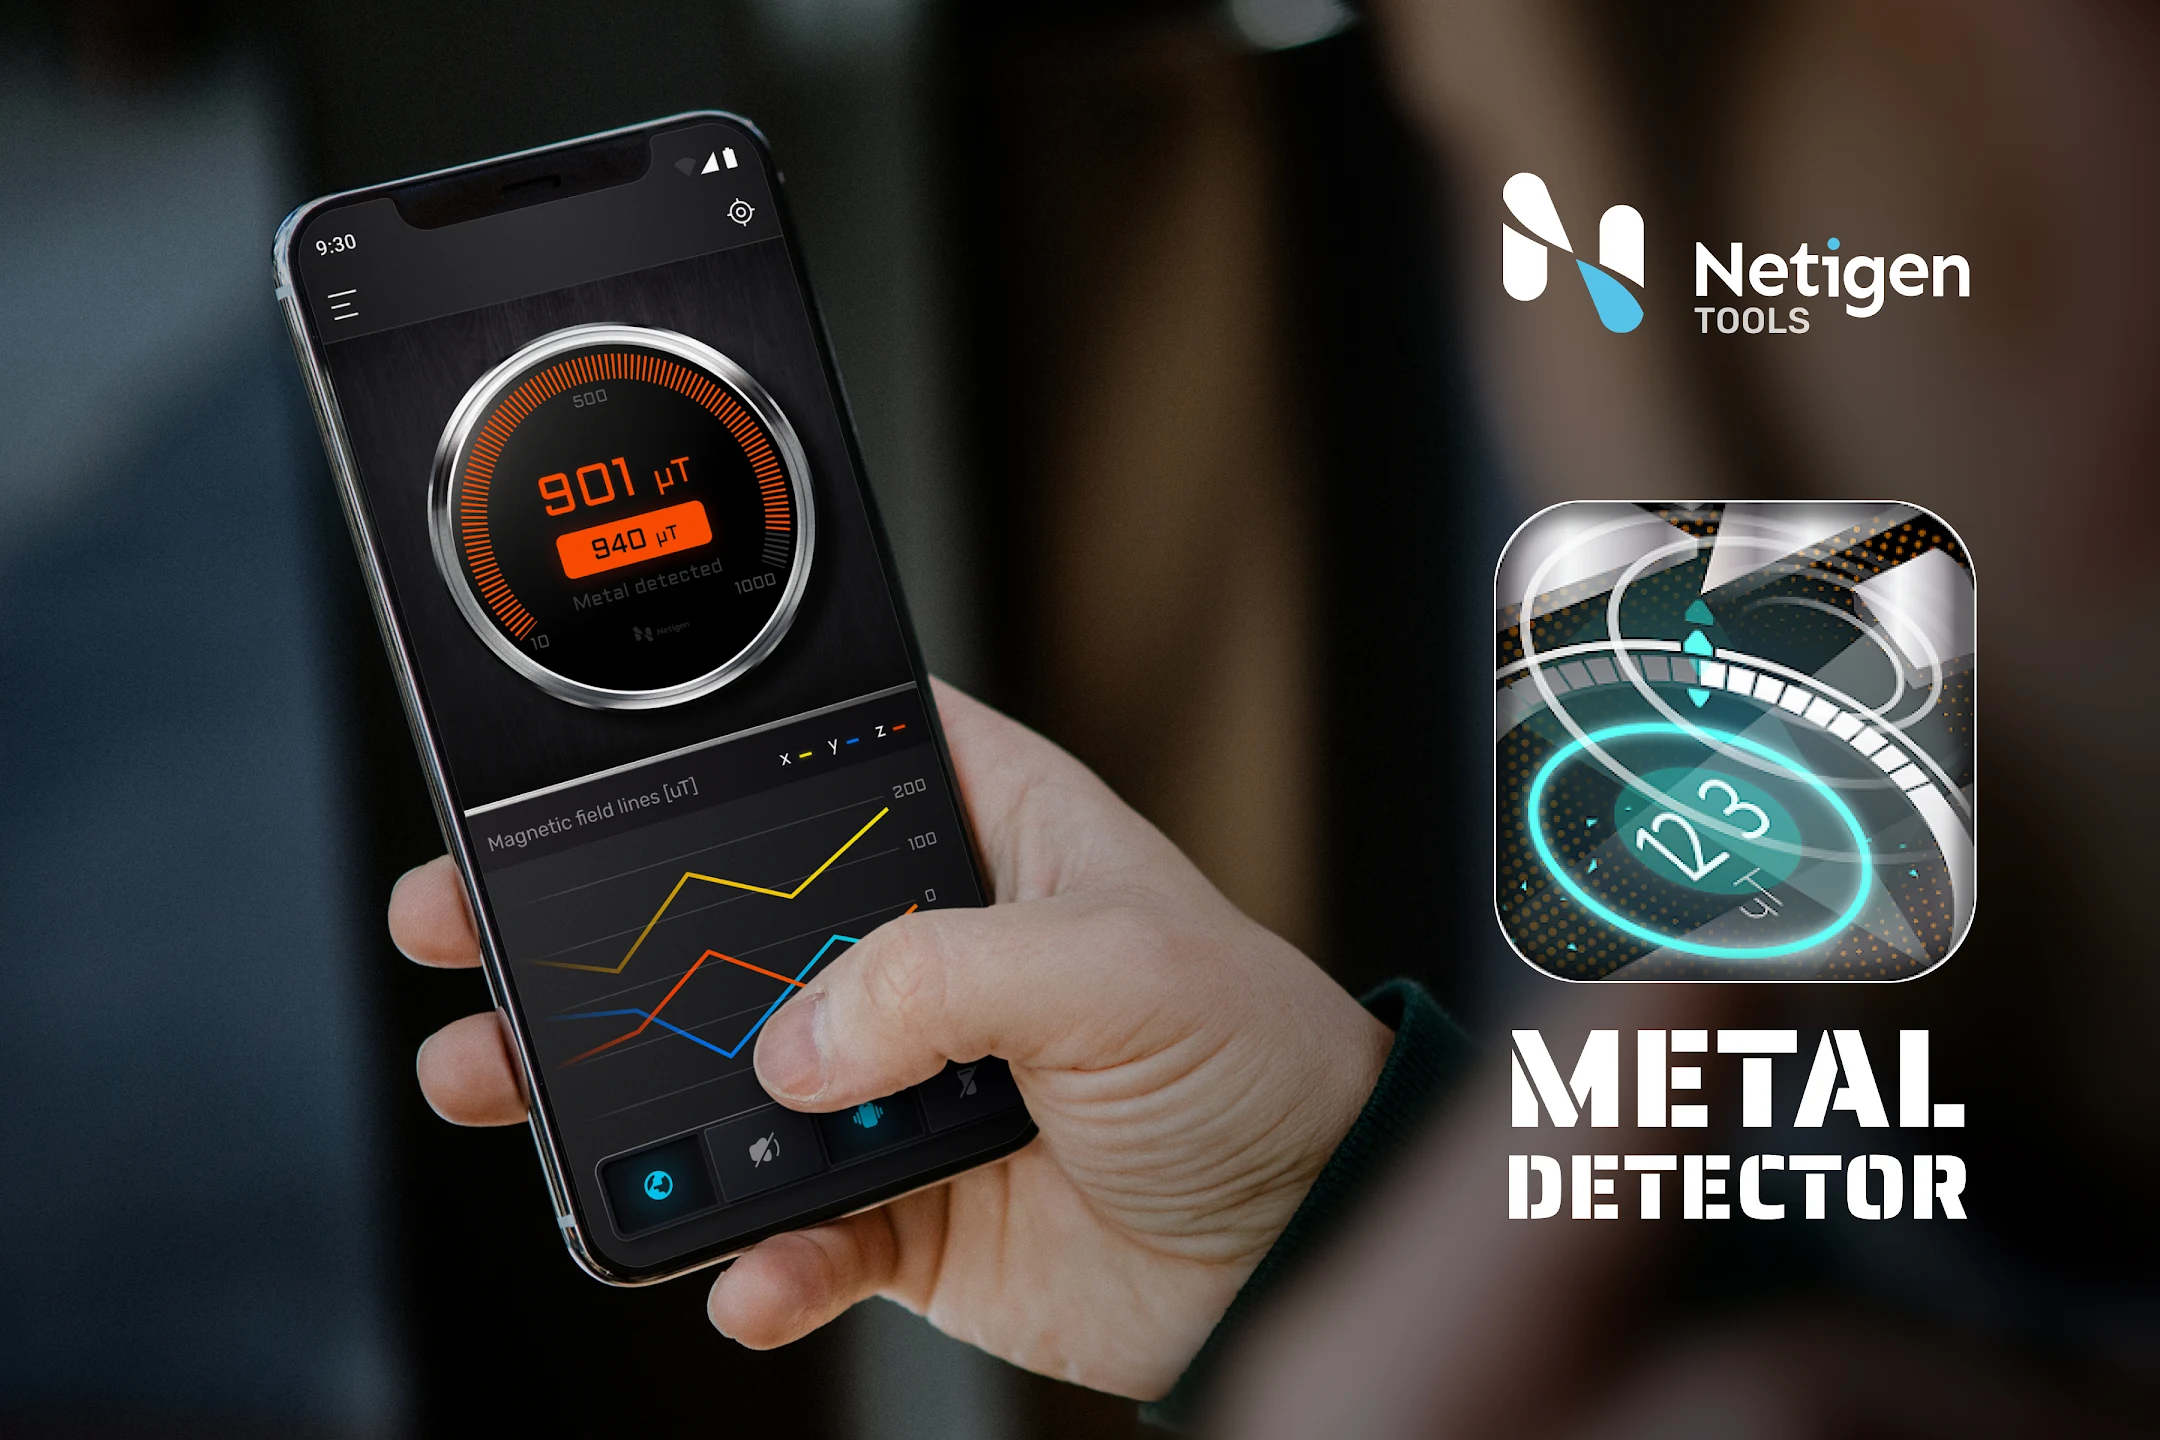 Metal Detector by Netigen Tools